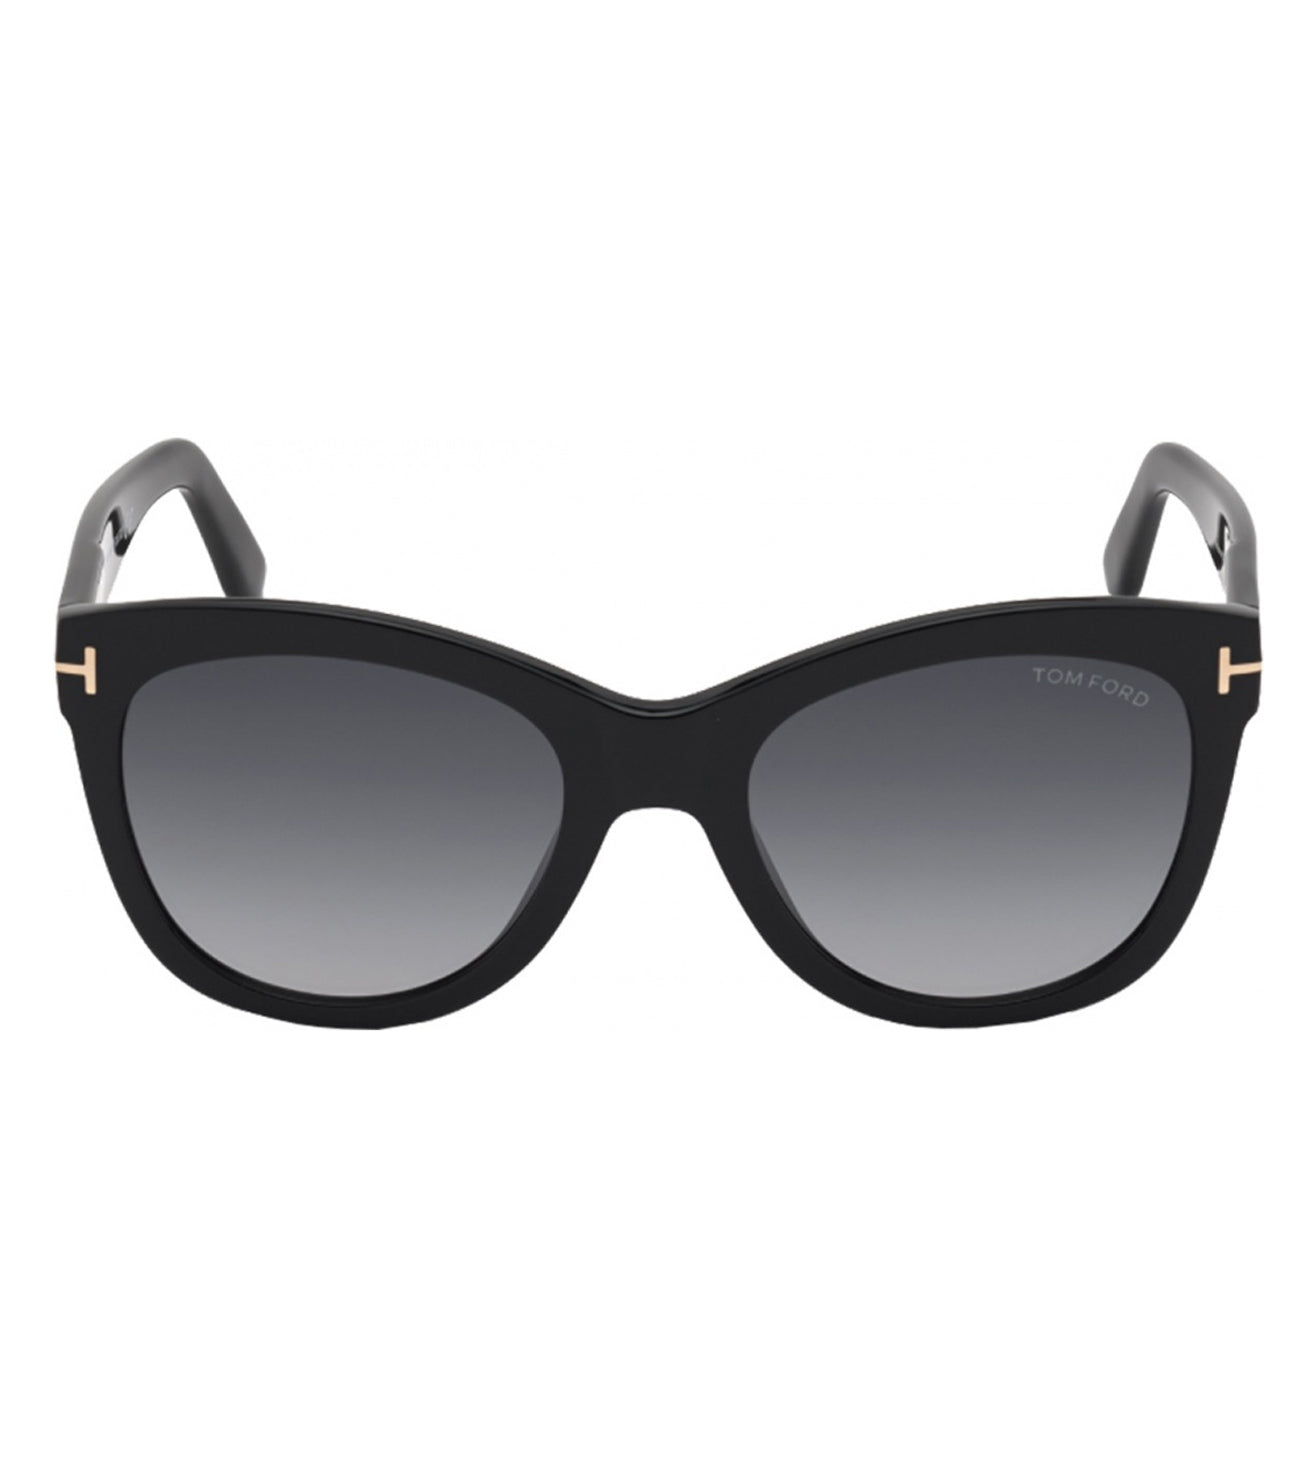 Tom Ford Unisex Black Cat-eye Sunglasses